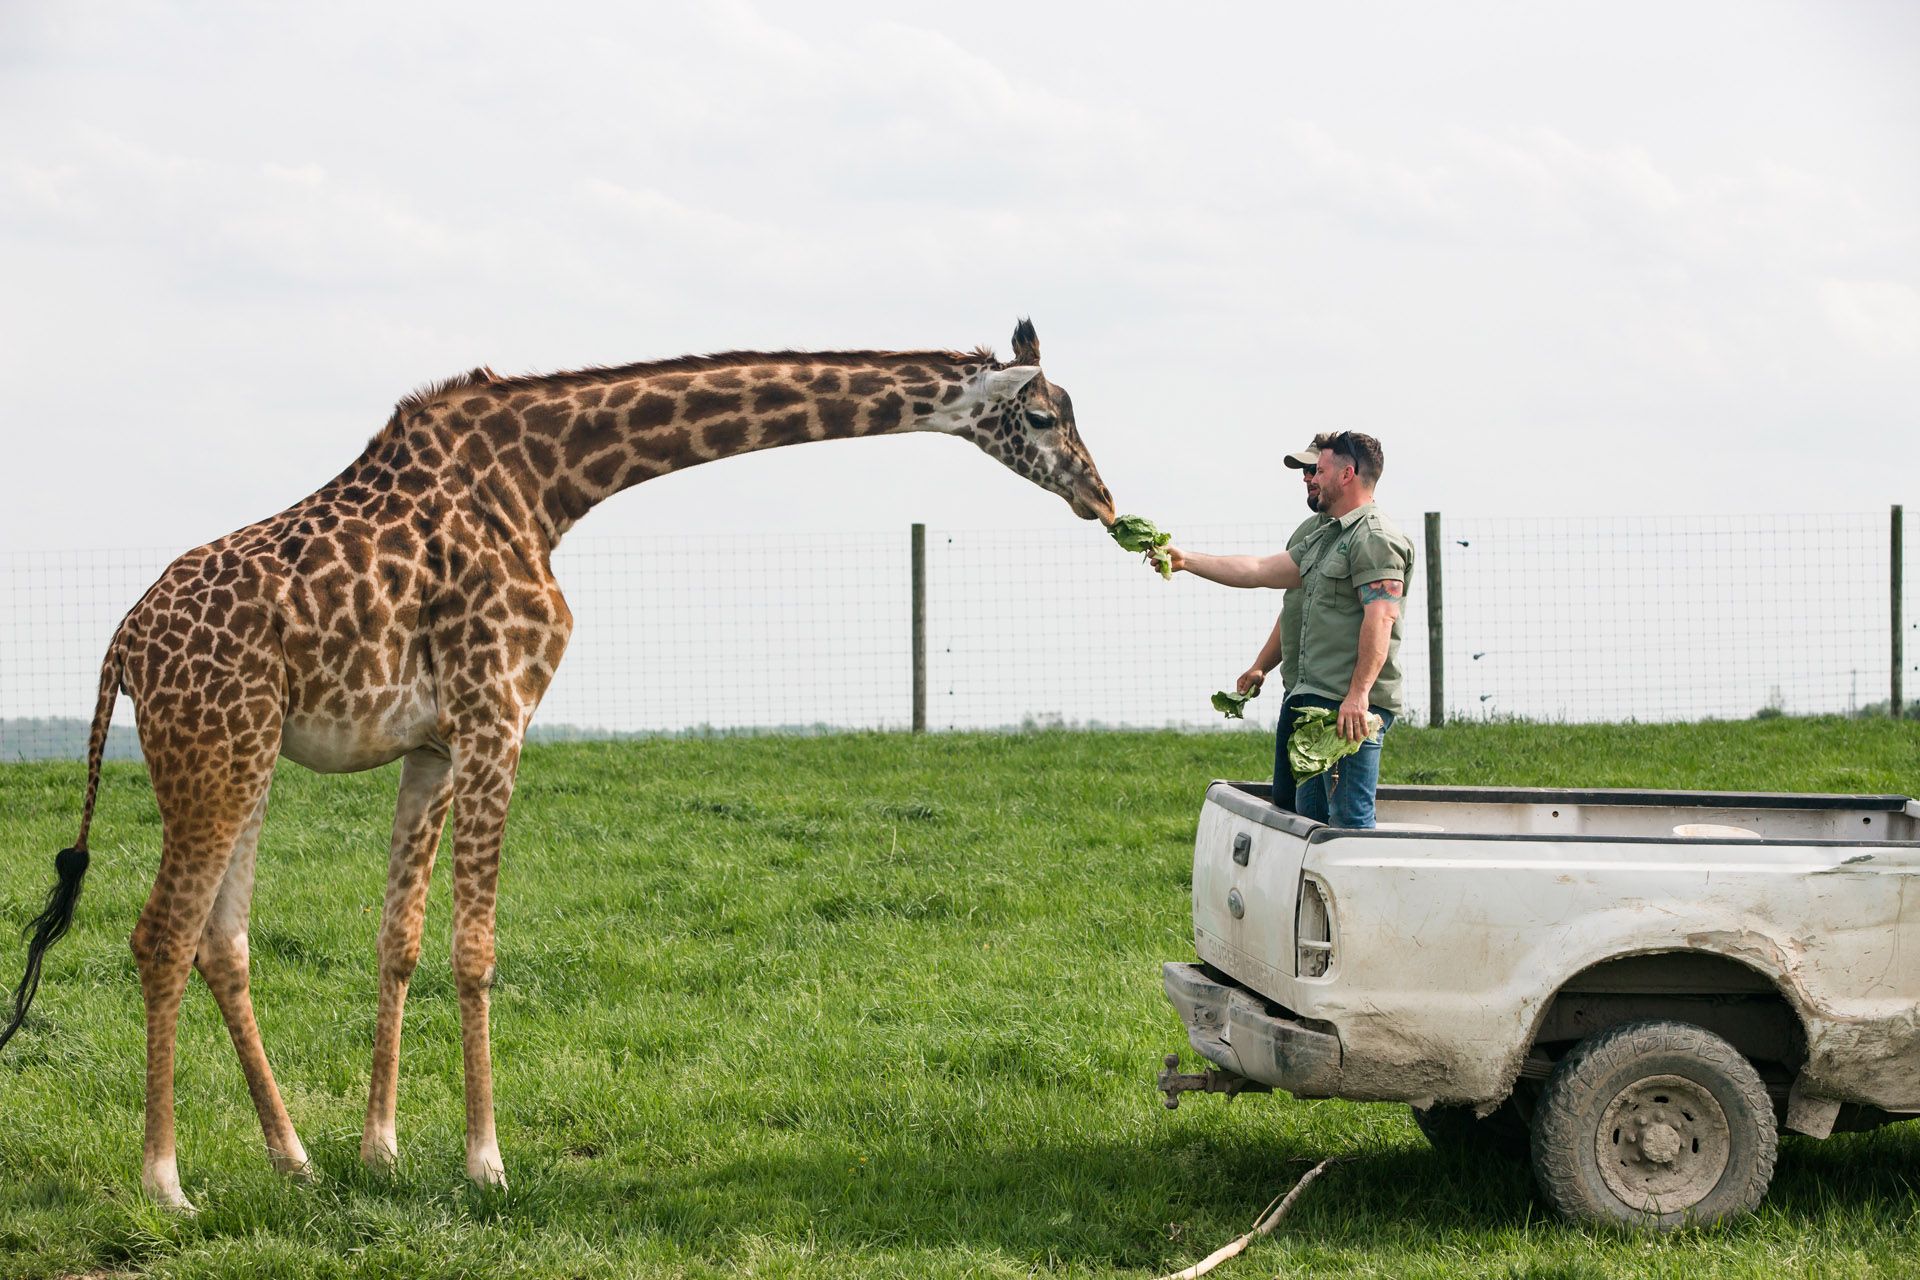 Secrets of the Zoo Season 2 Press Trip - Giraffe in The Wilds